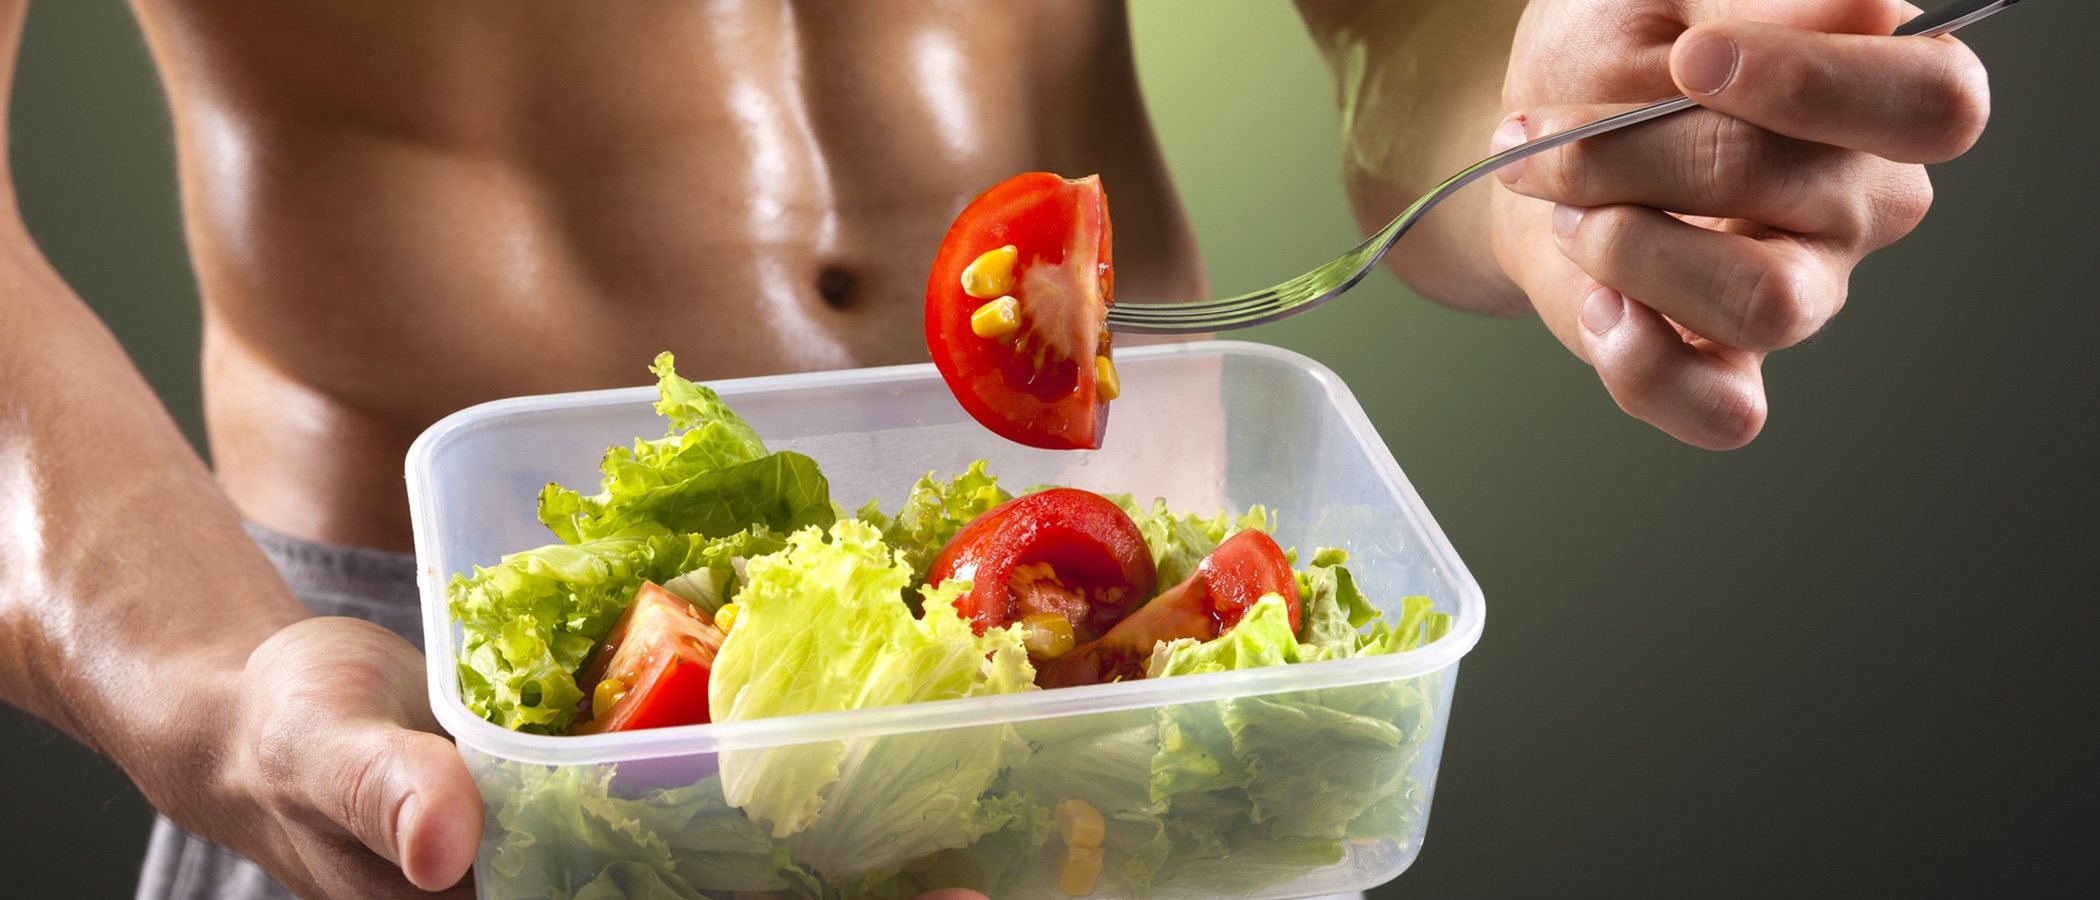 Hombres: Dieta para muscular tu cuerpo